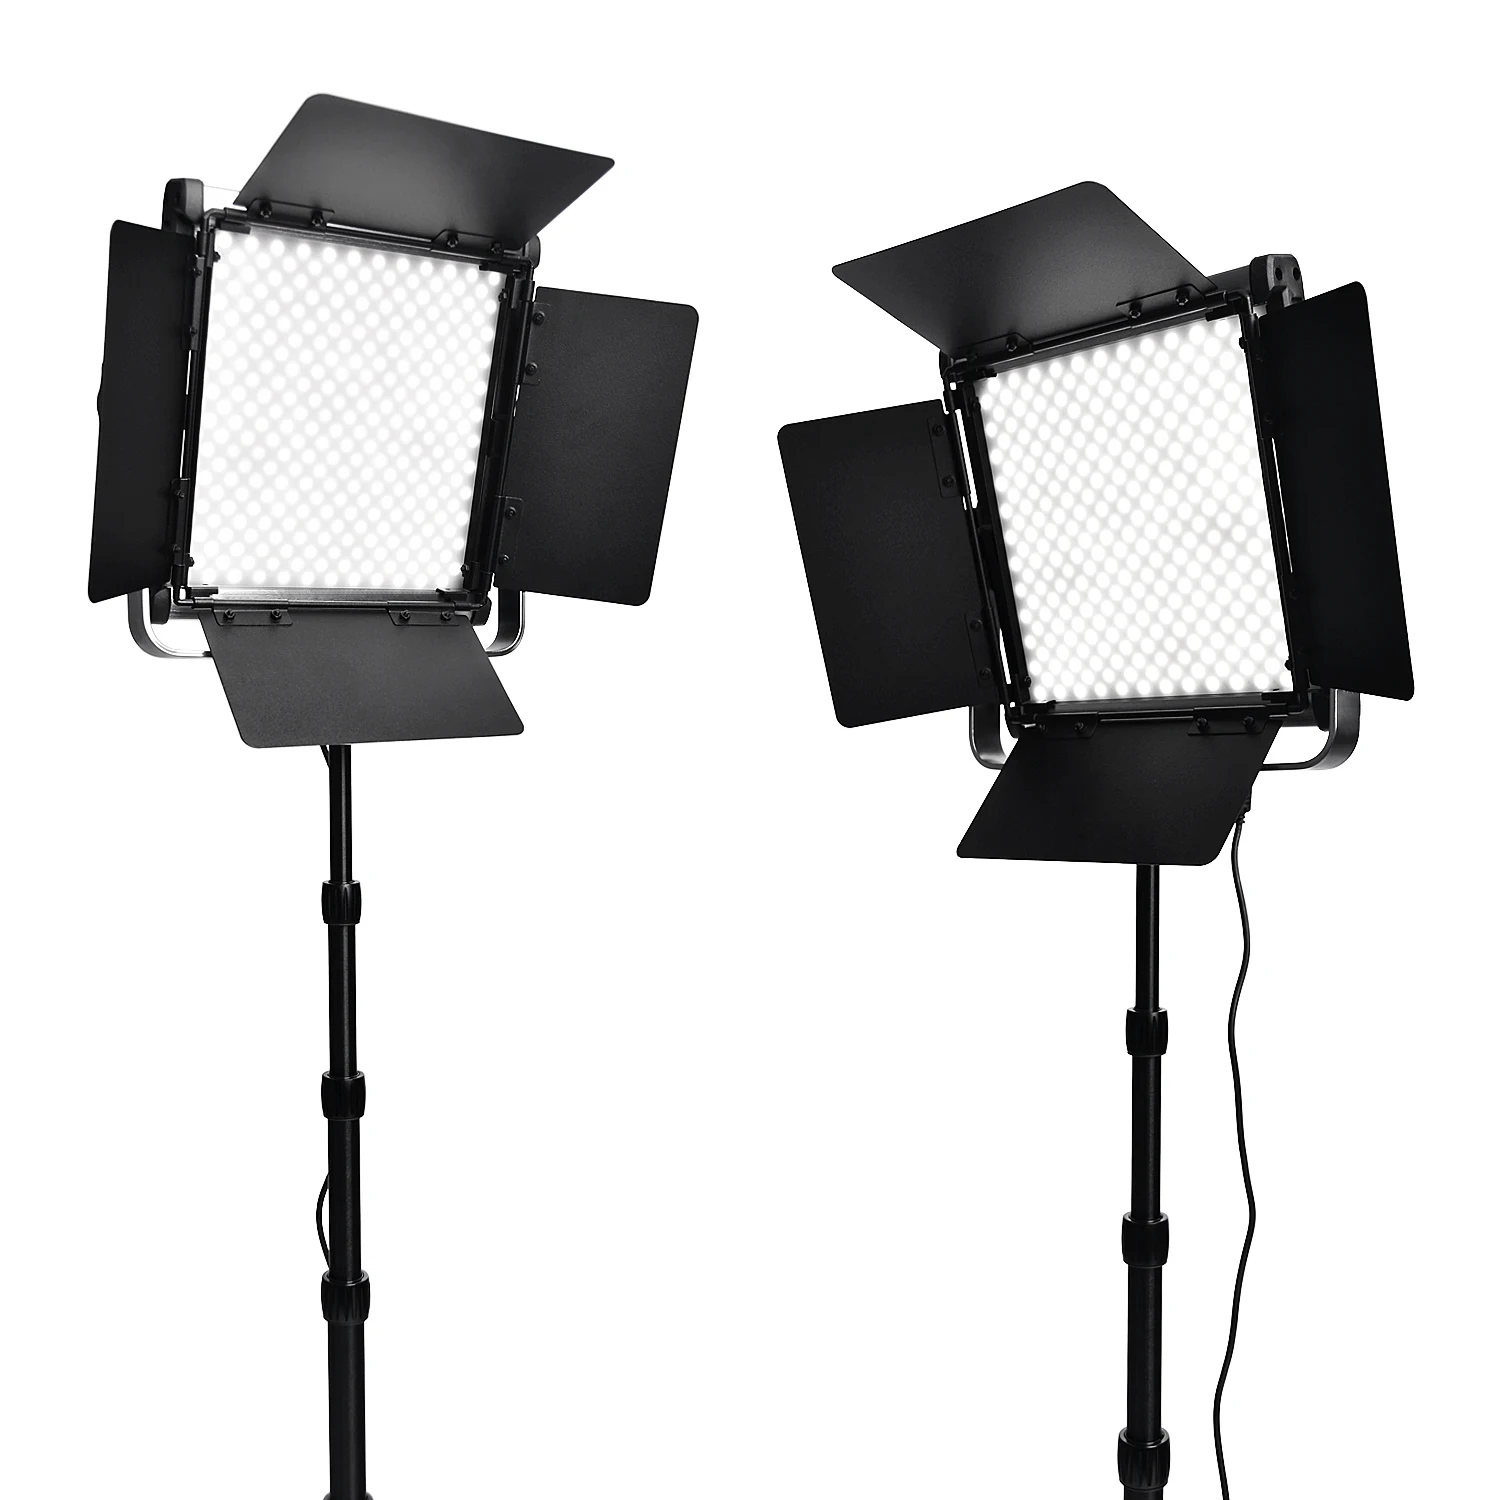 Fosoto 2 в 1 комплект светодиодный светильник для видео 3200-5600K 40W фотографические лампы с штативами светодиодный студийный светильник для фото камеры Youtube